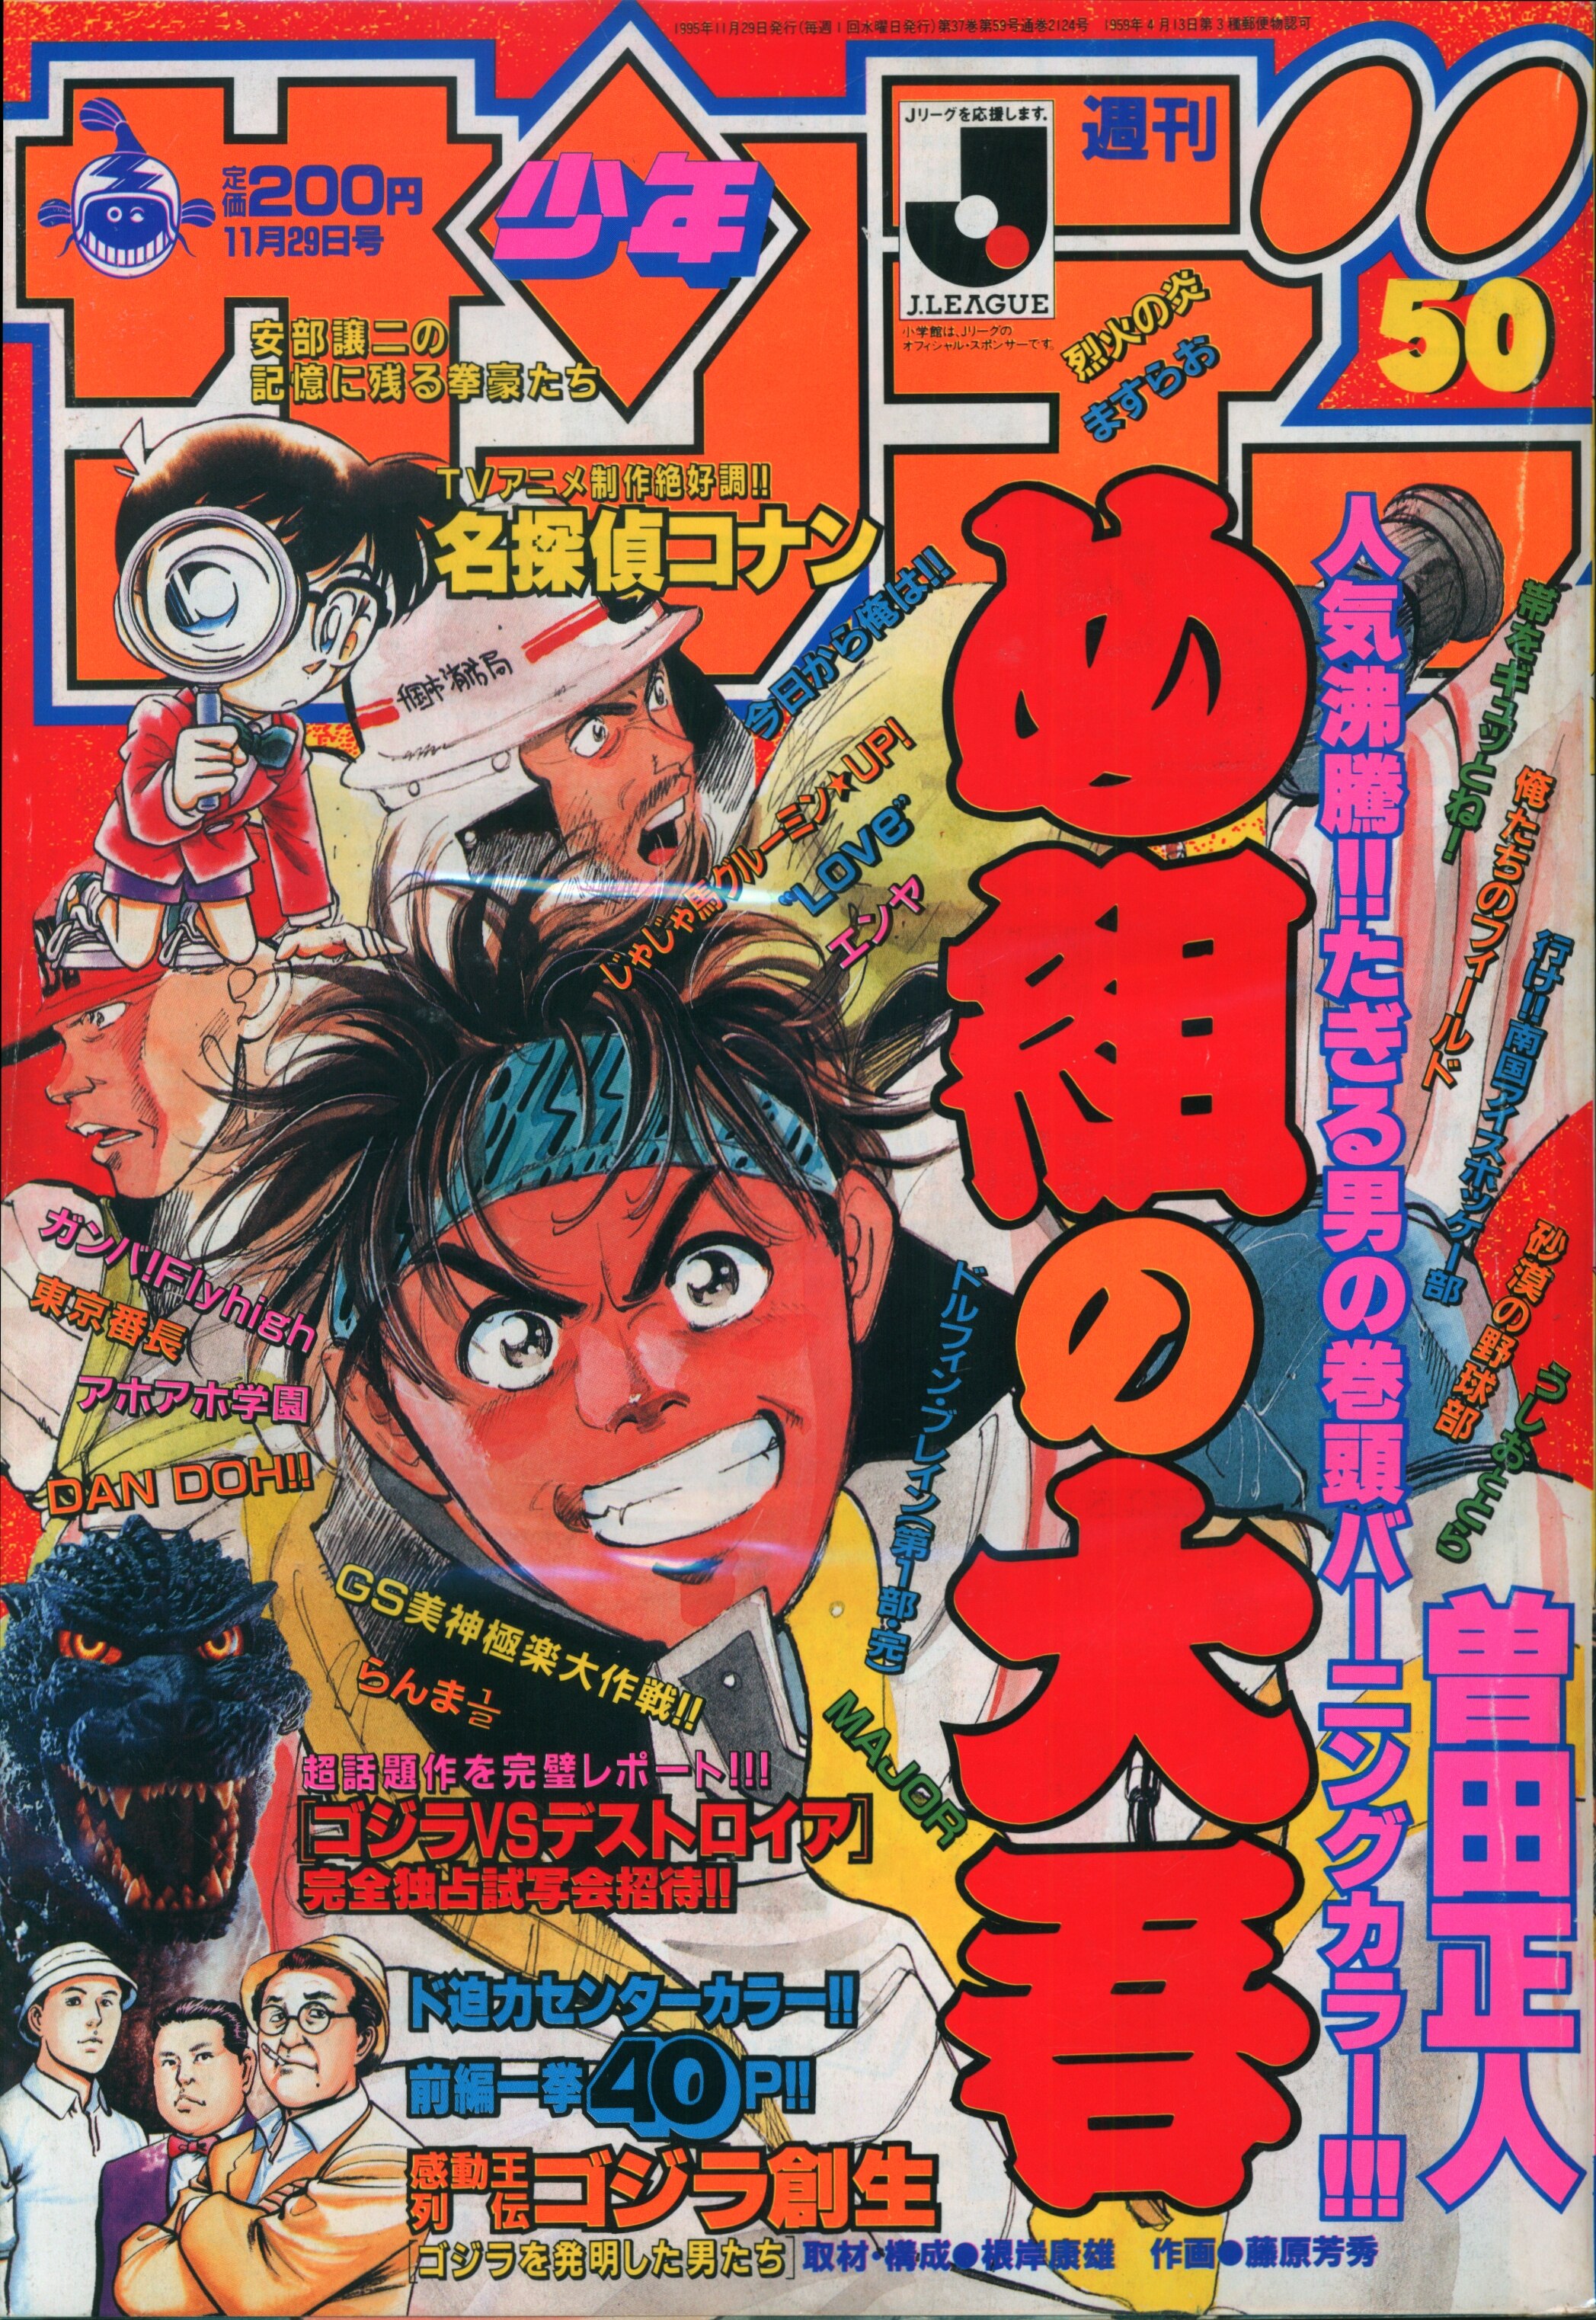 小学館 1995年(平成7年)の漫画雑誌 週刊少年サンデー1995年(平成7年)50